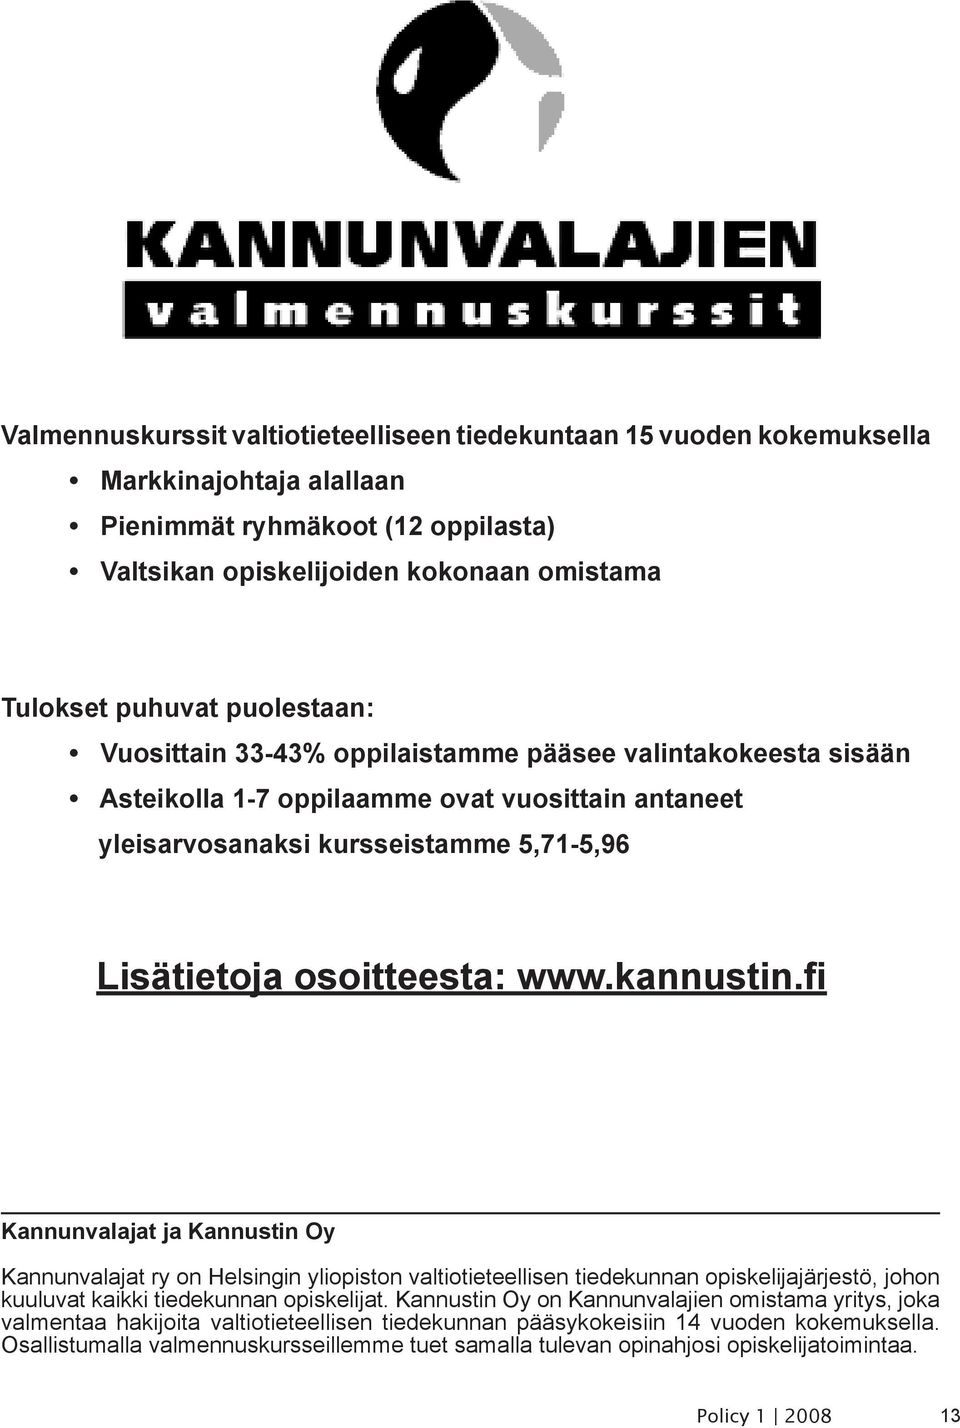 kannustin.fi Kannunvalajat ja Kannustin Oy Kannunvalajat ry on Helsingin yliopiston valtiotieteellisen tiedekunnan opiskelijajärjestö, johon kuuluvat kaikki tiedekunnan opiskelijat.